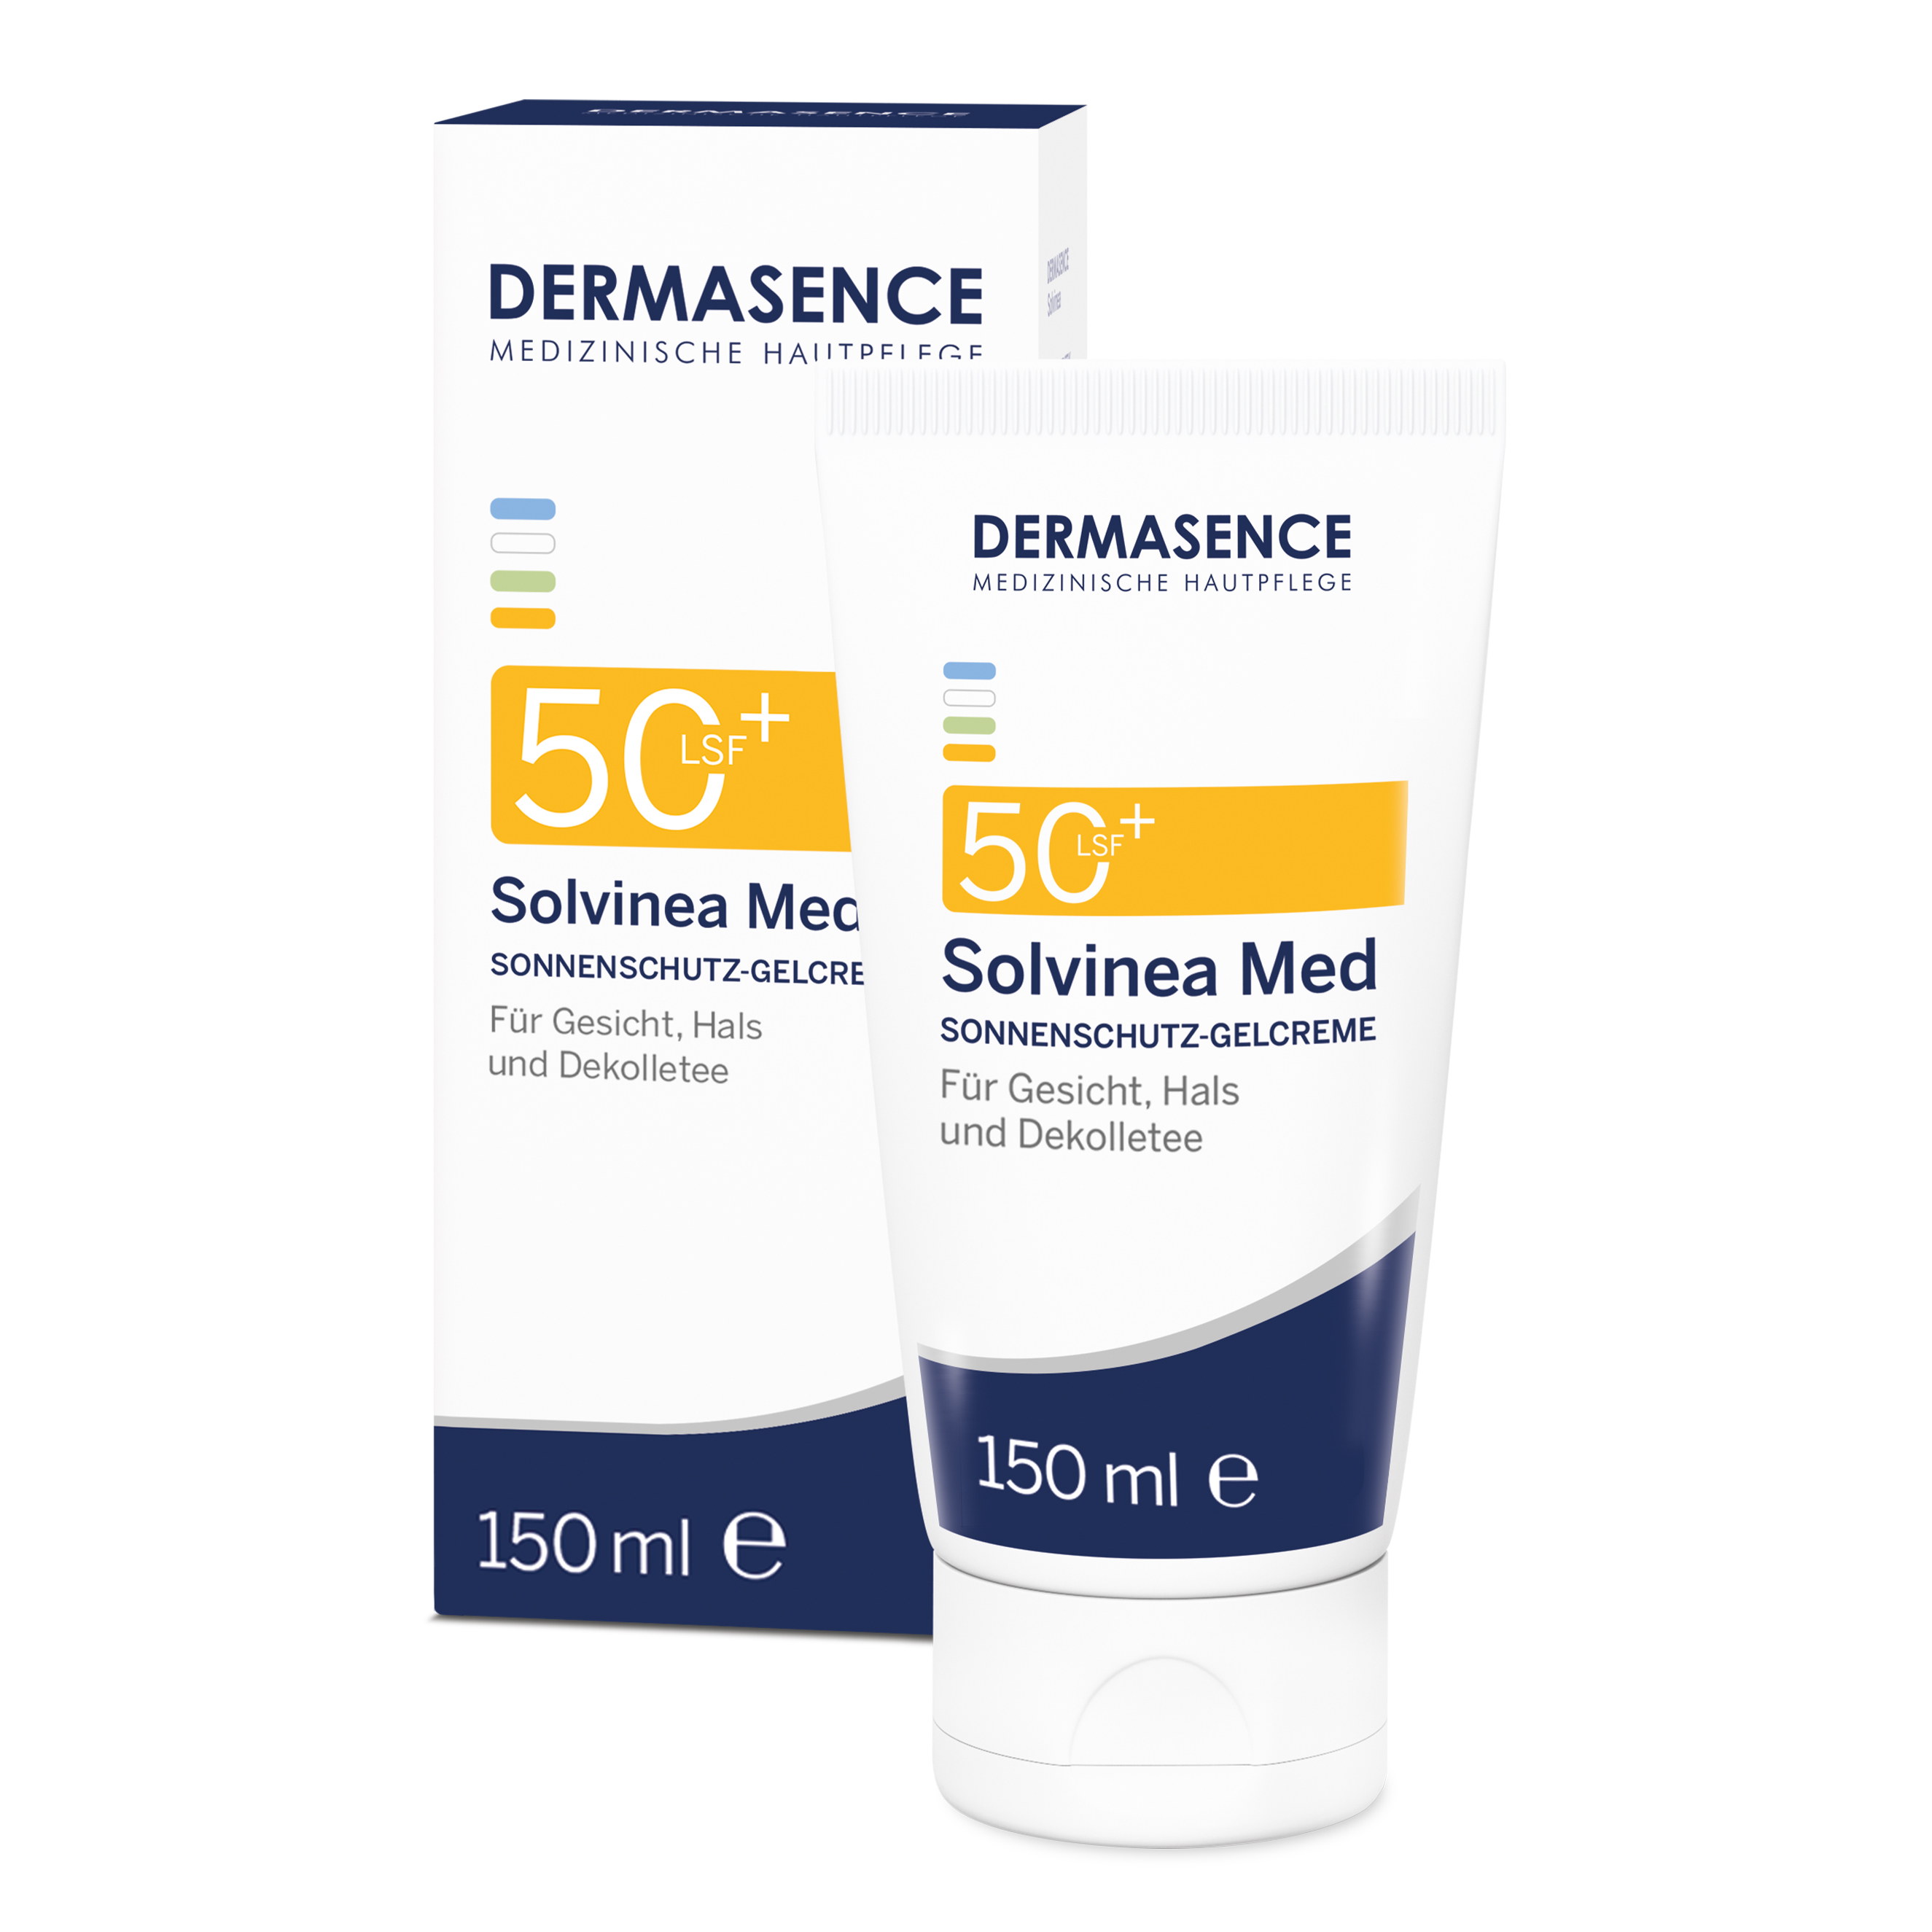 Dermasence Solvinea Med Lsf 50+ Creme (150 ml)